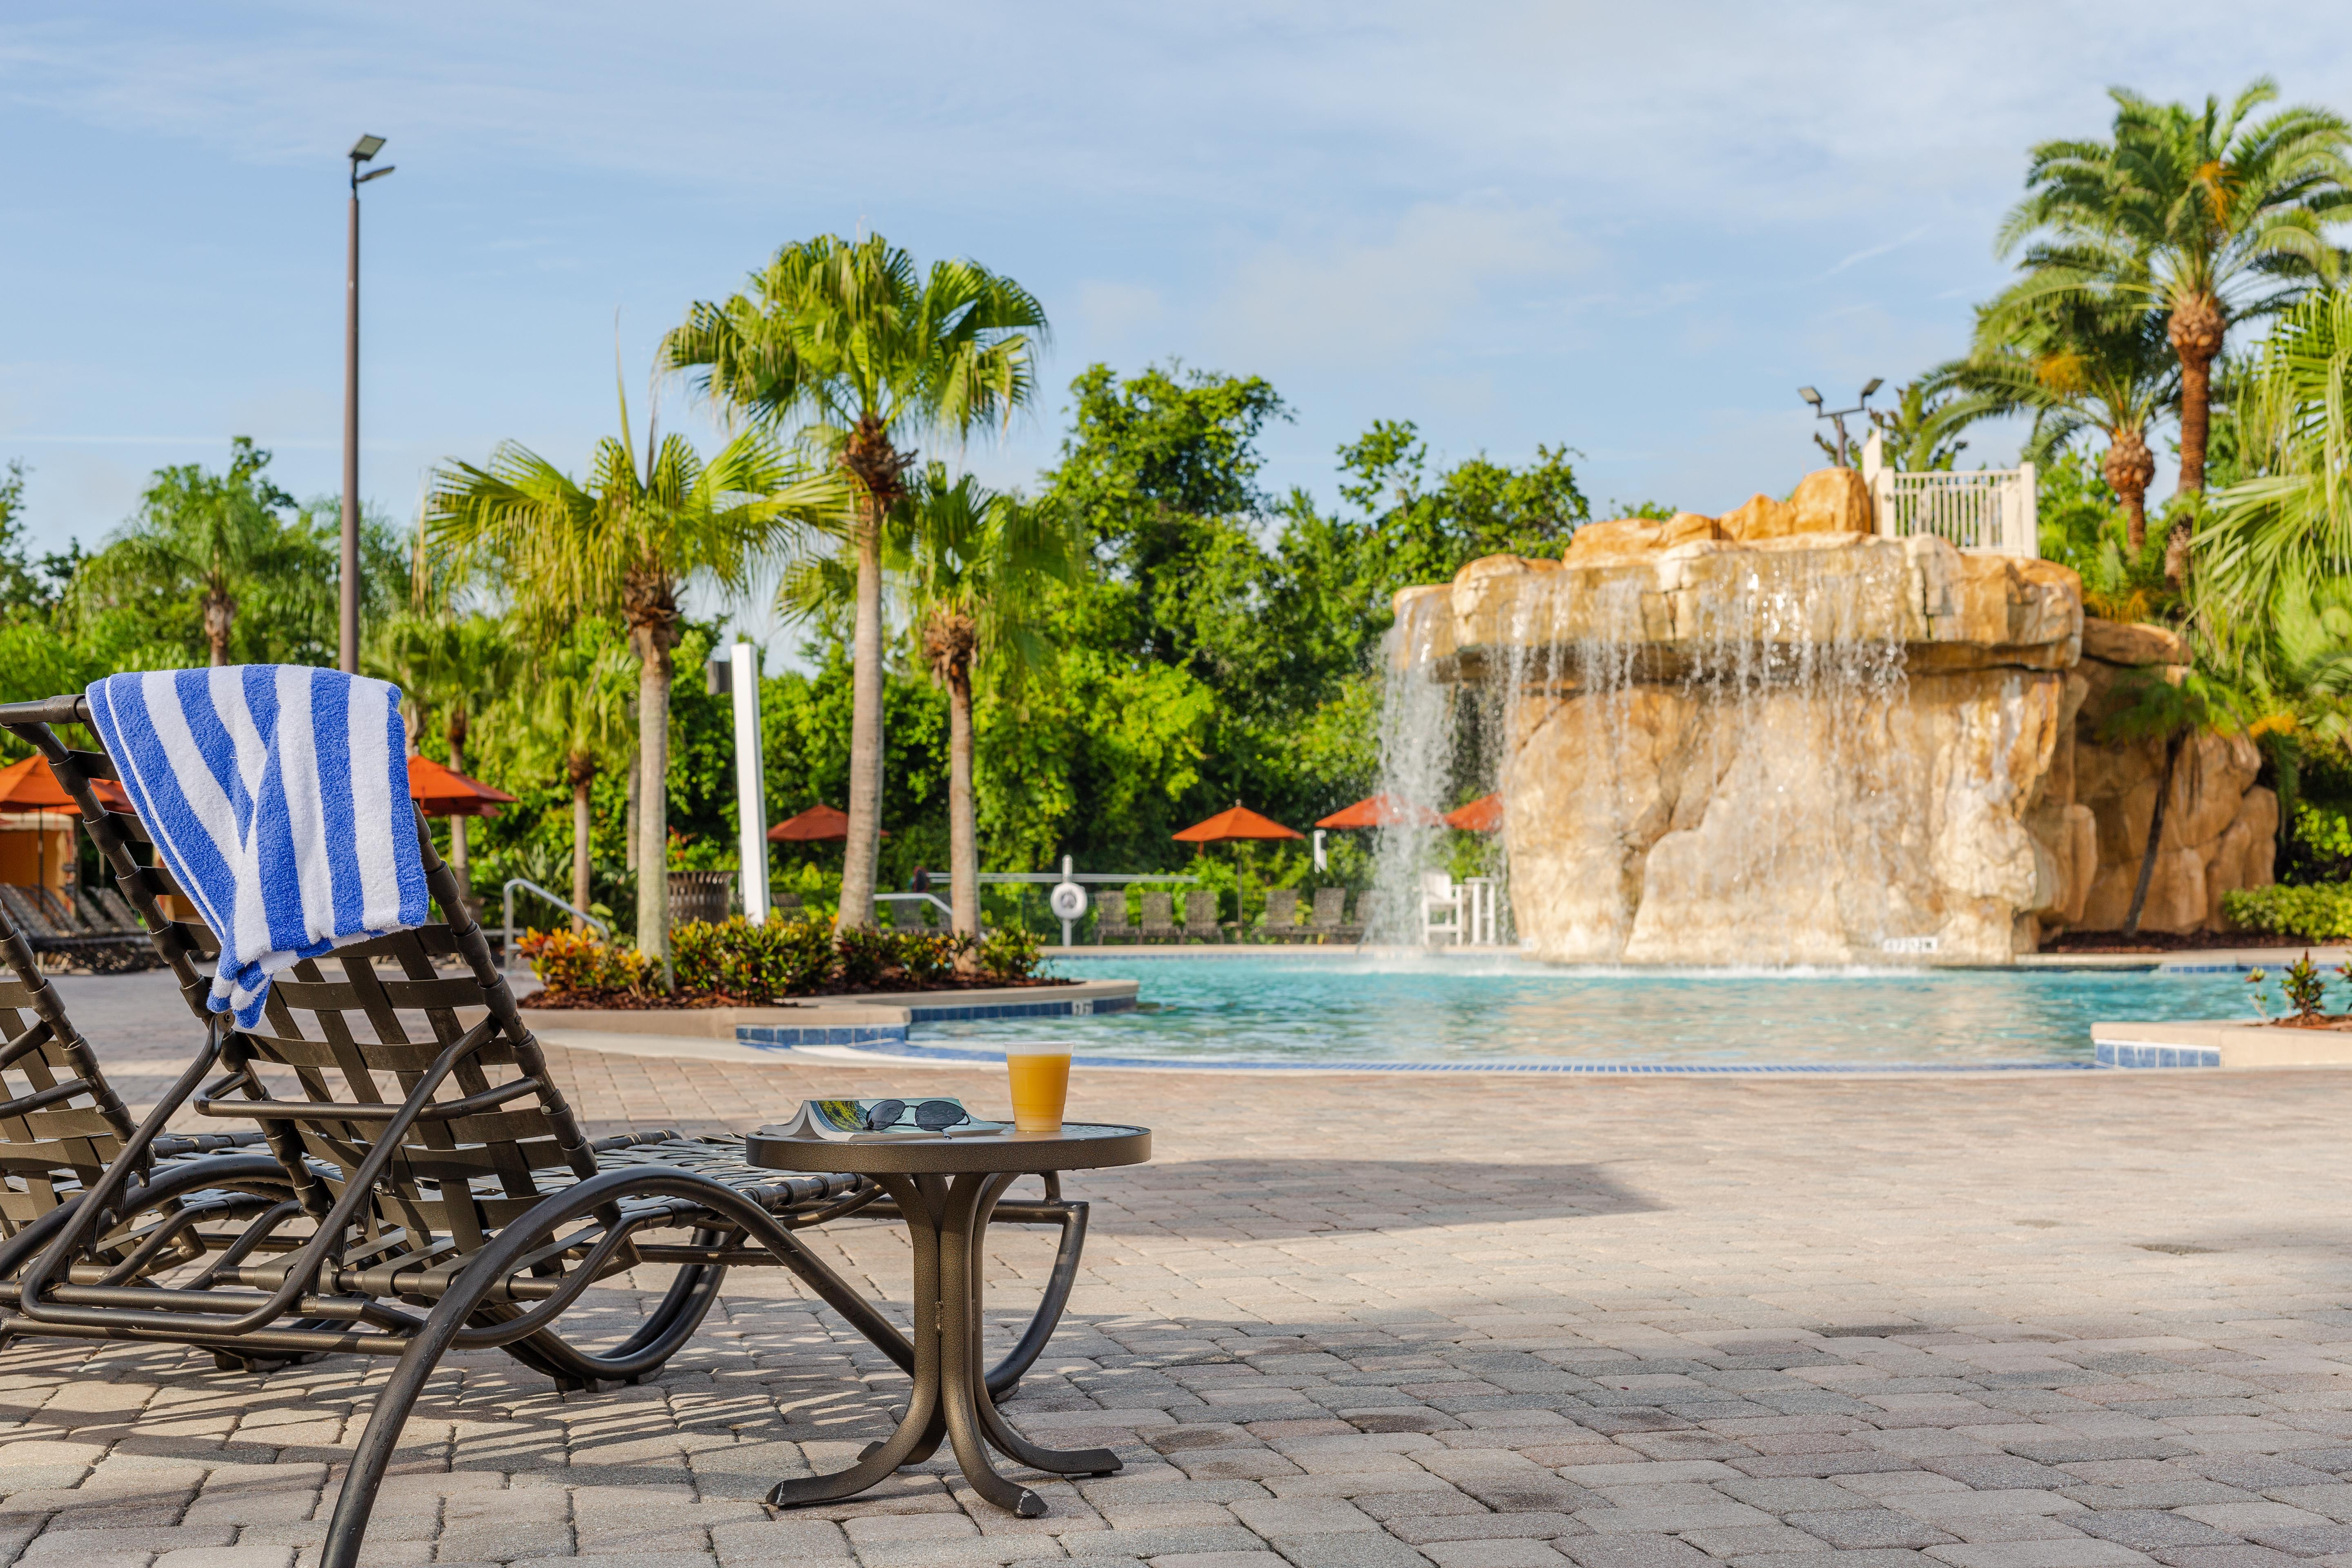 Hilton Vacation Club Mystic Dunes Orlando Kültér fotó